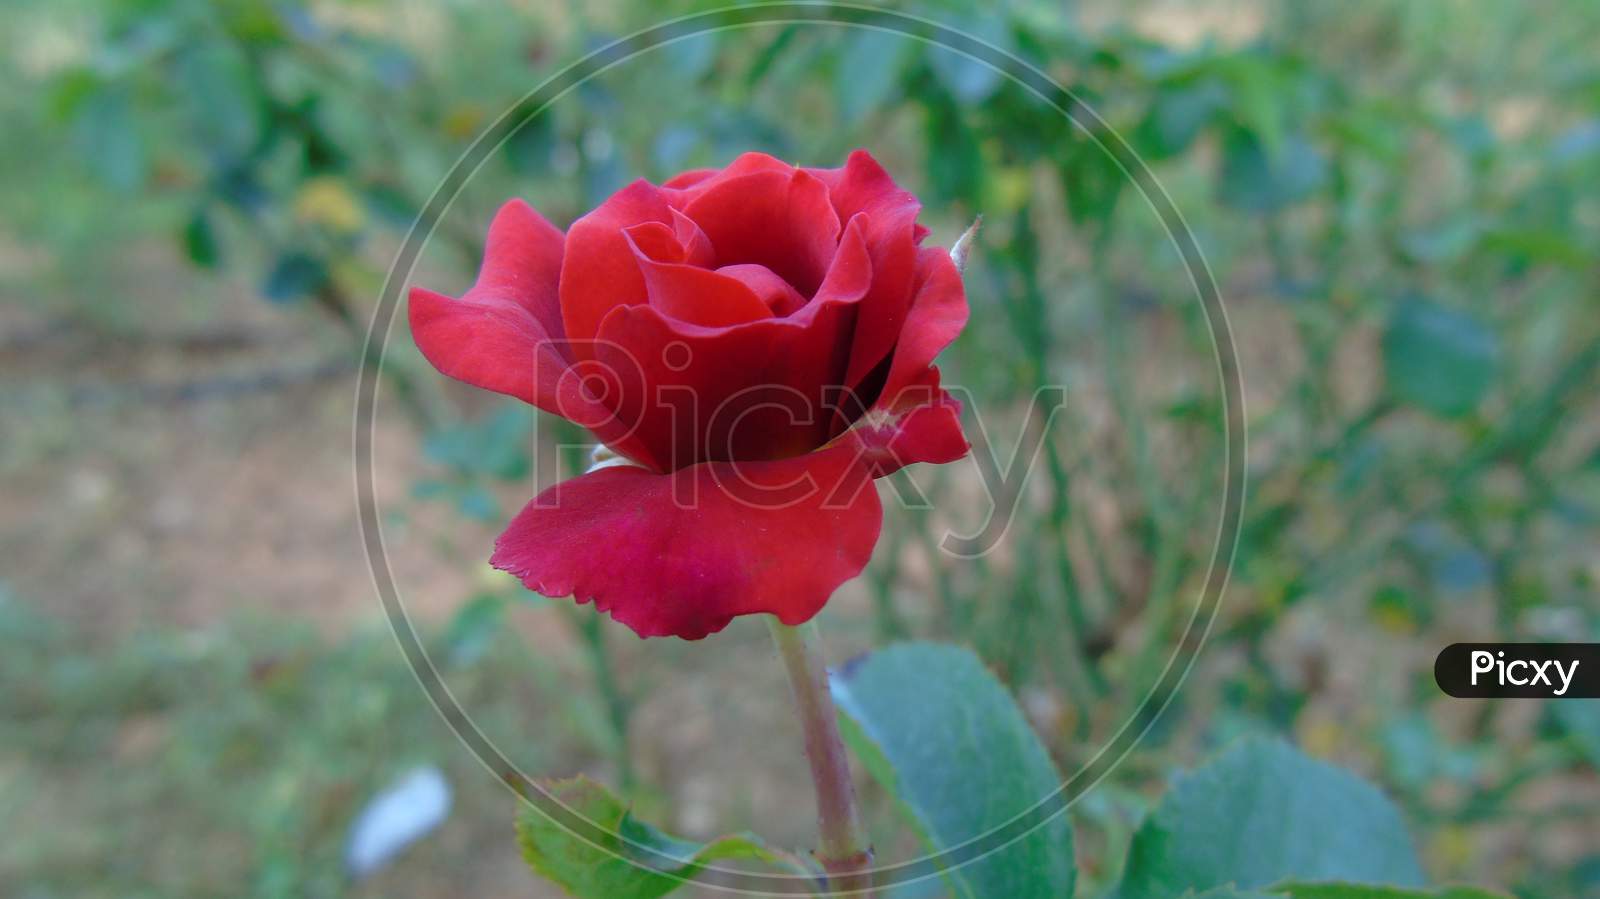 Rose flower in the garden